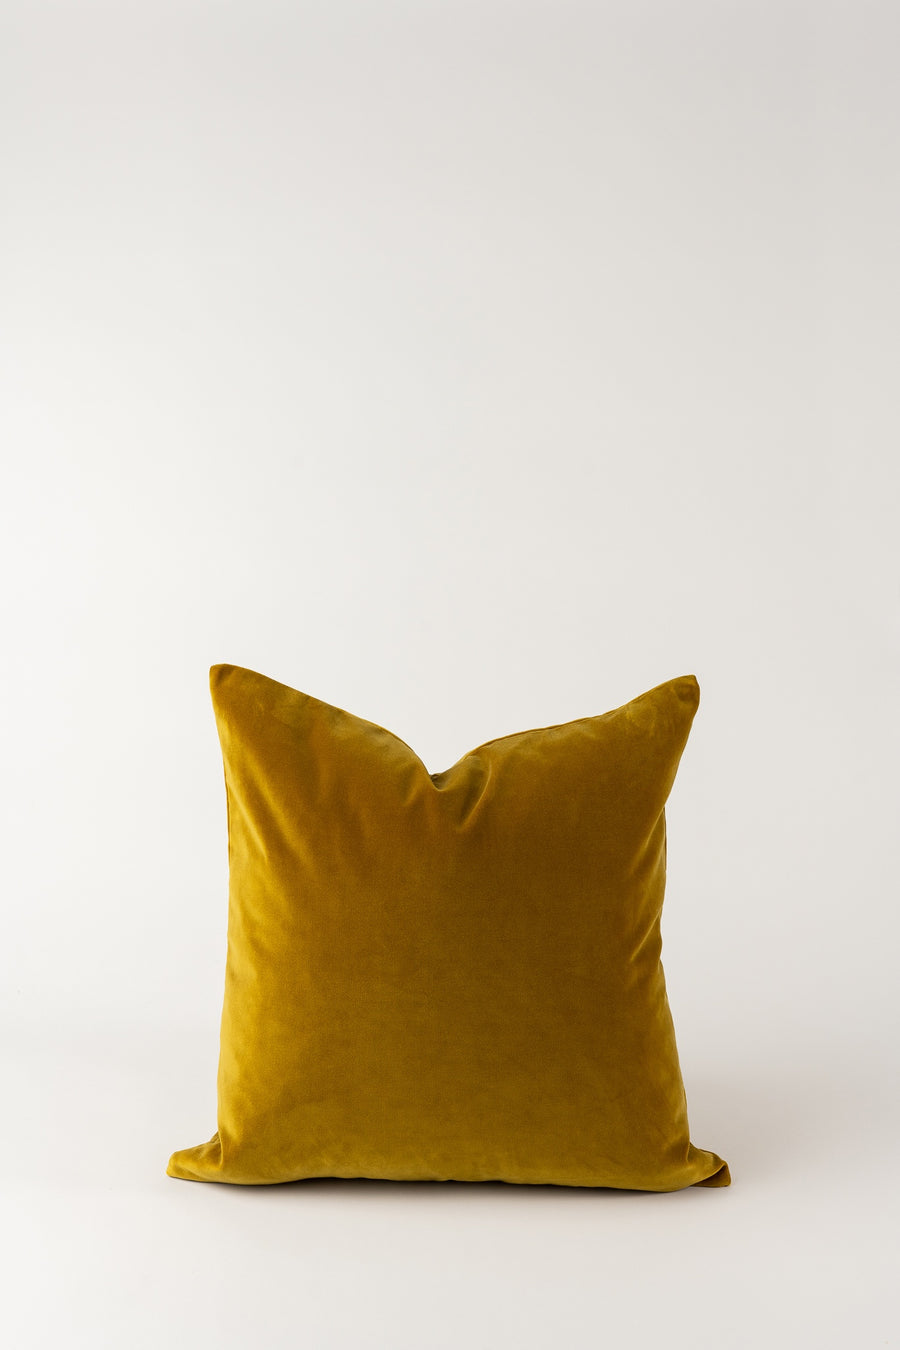 Kindred Cushion - Gold Velvet